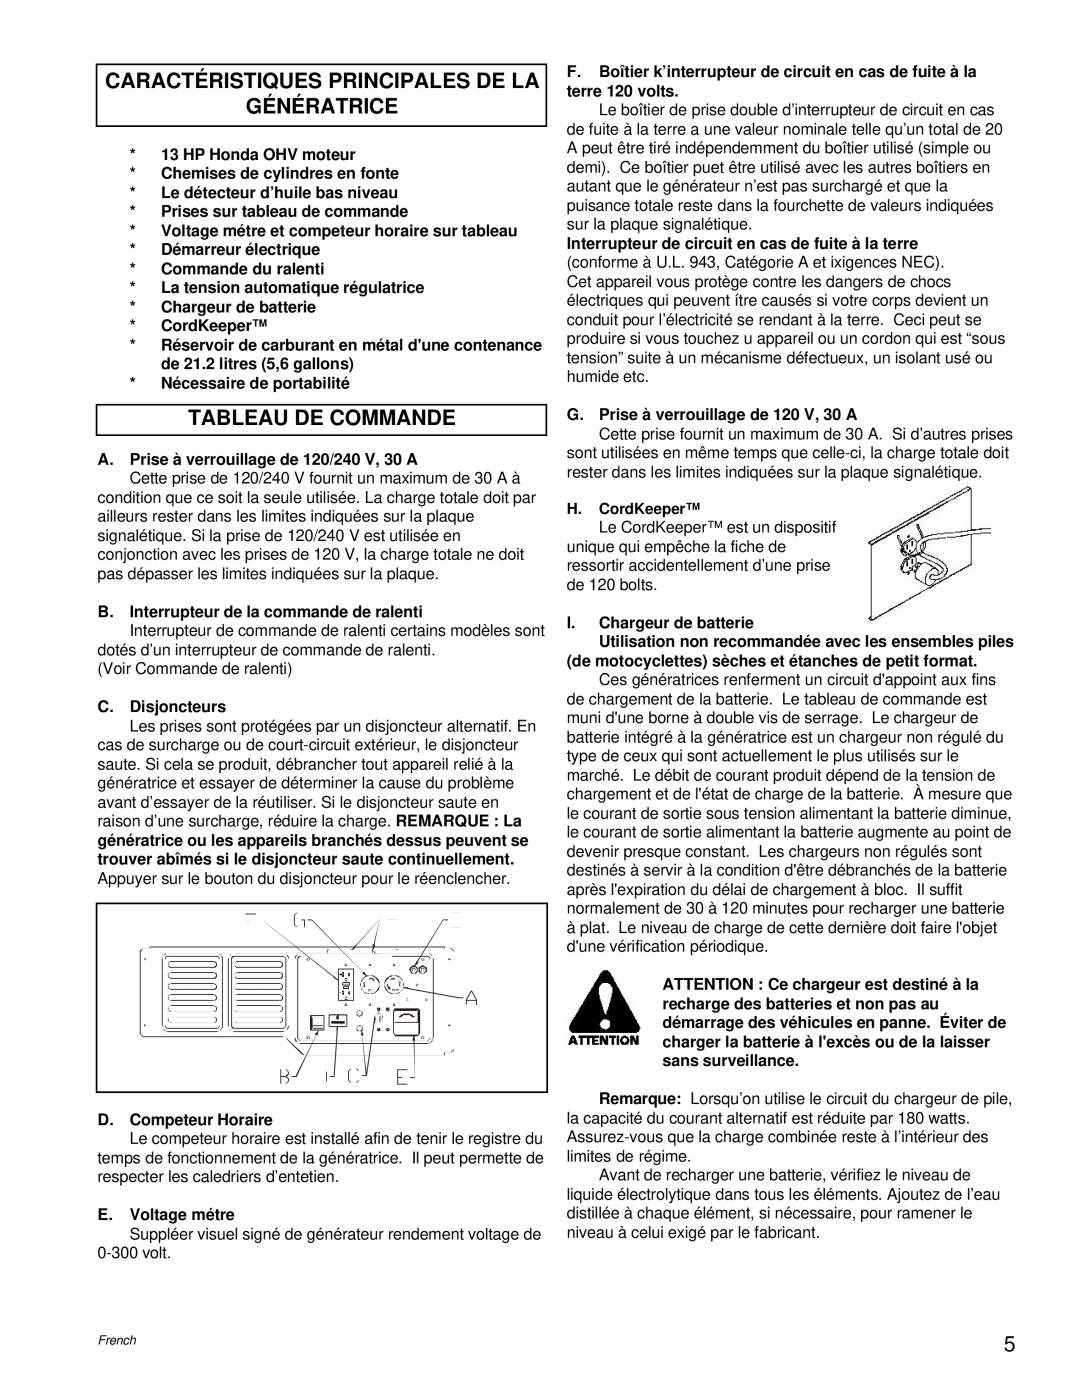 Powermate PC0496503.17 manual Caractéristiques Principales De La Génératrice, Tableau De Commande 